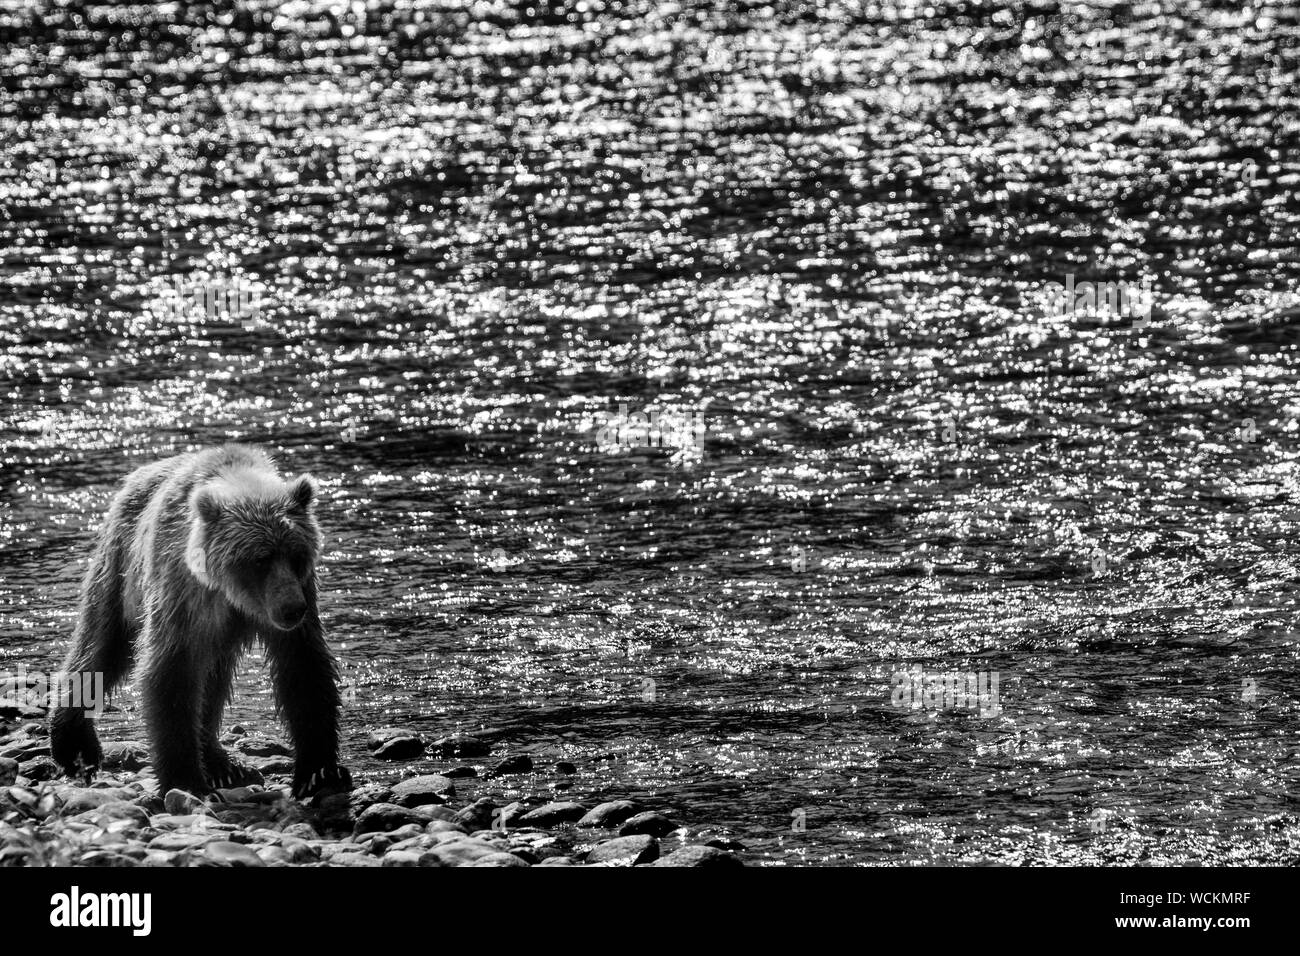 Adulto Orso grizzly camminando lungo la riva del fiume contro un fiume brilla al sole, Ursus arctos horribilis, orso bruno, Nord America, Canada, Foto Stock